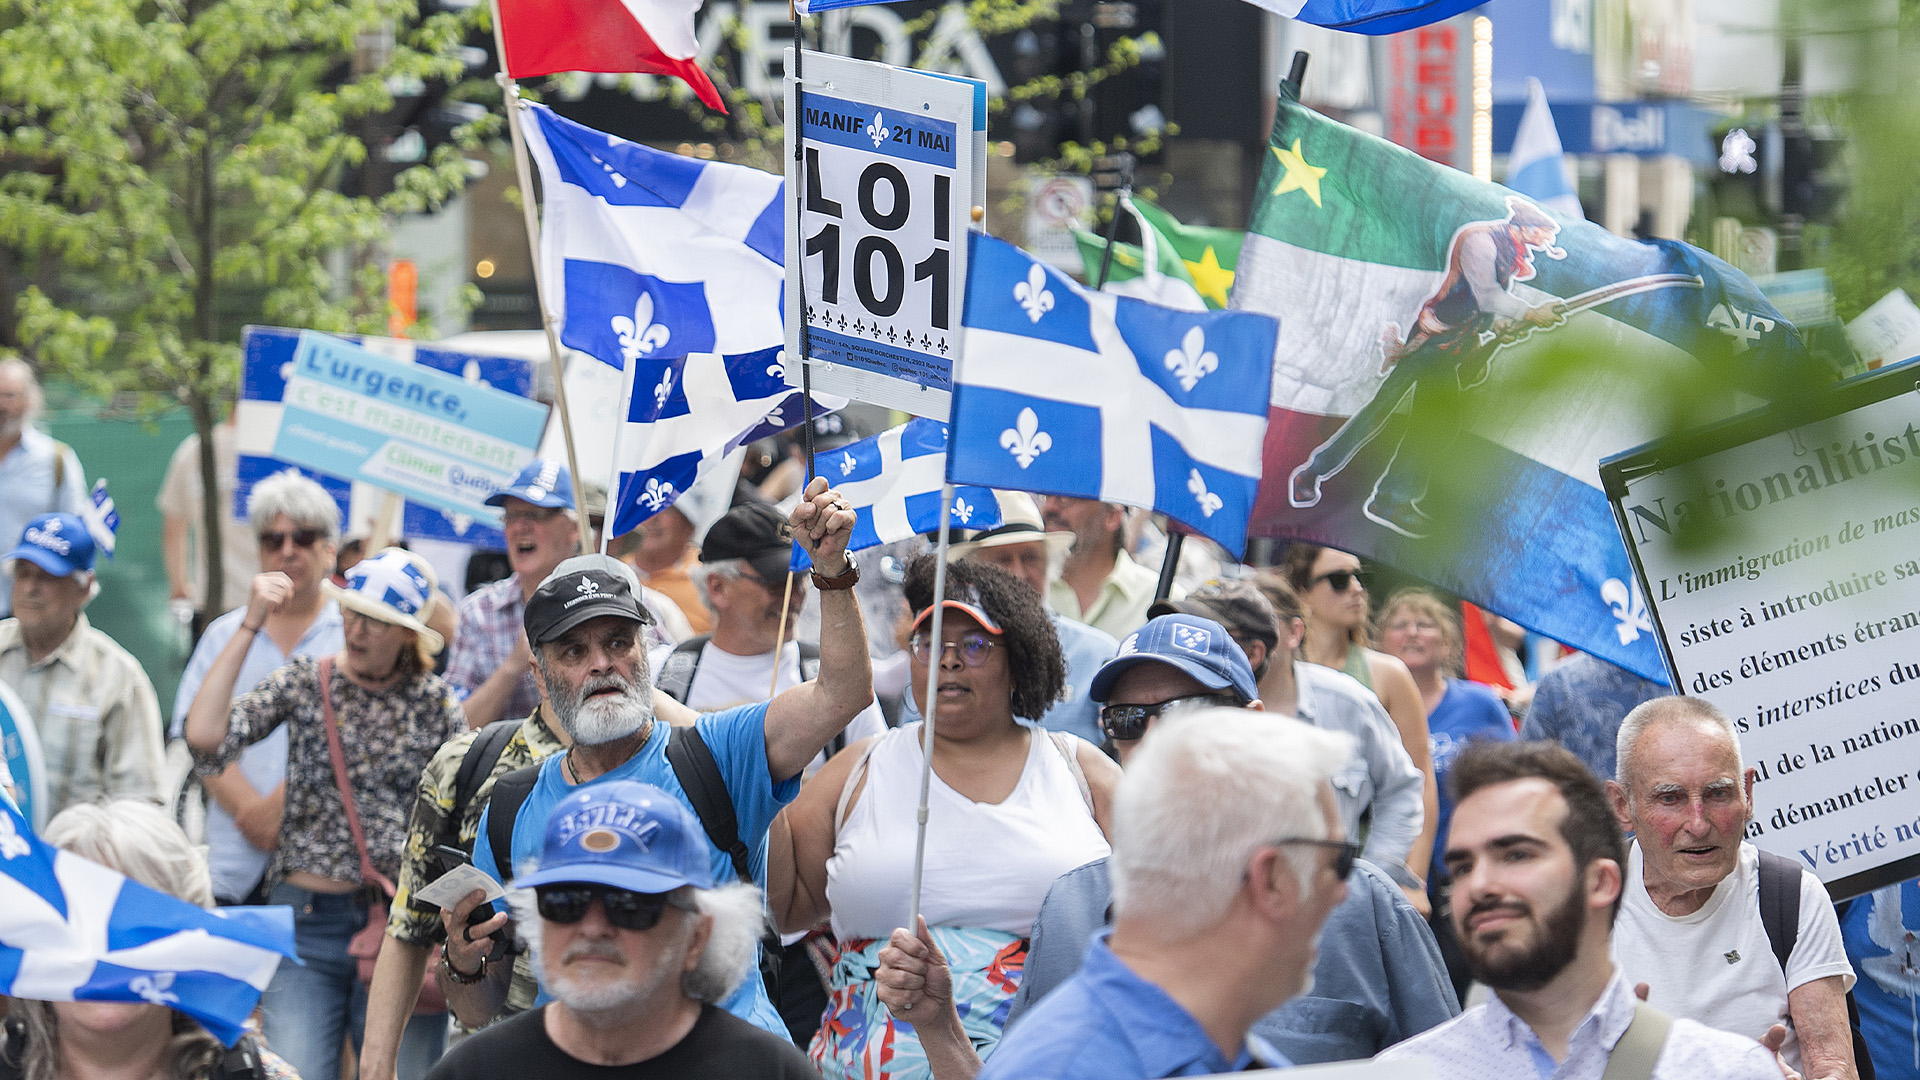 Des gens participent à une marche en faveur de la loi 101 à Montréal, le samedi 21 mai 2022.